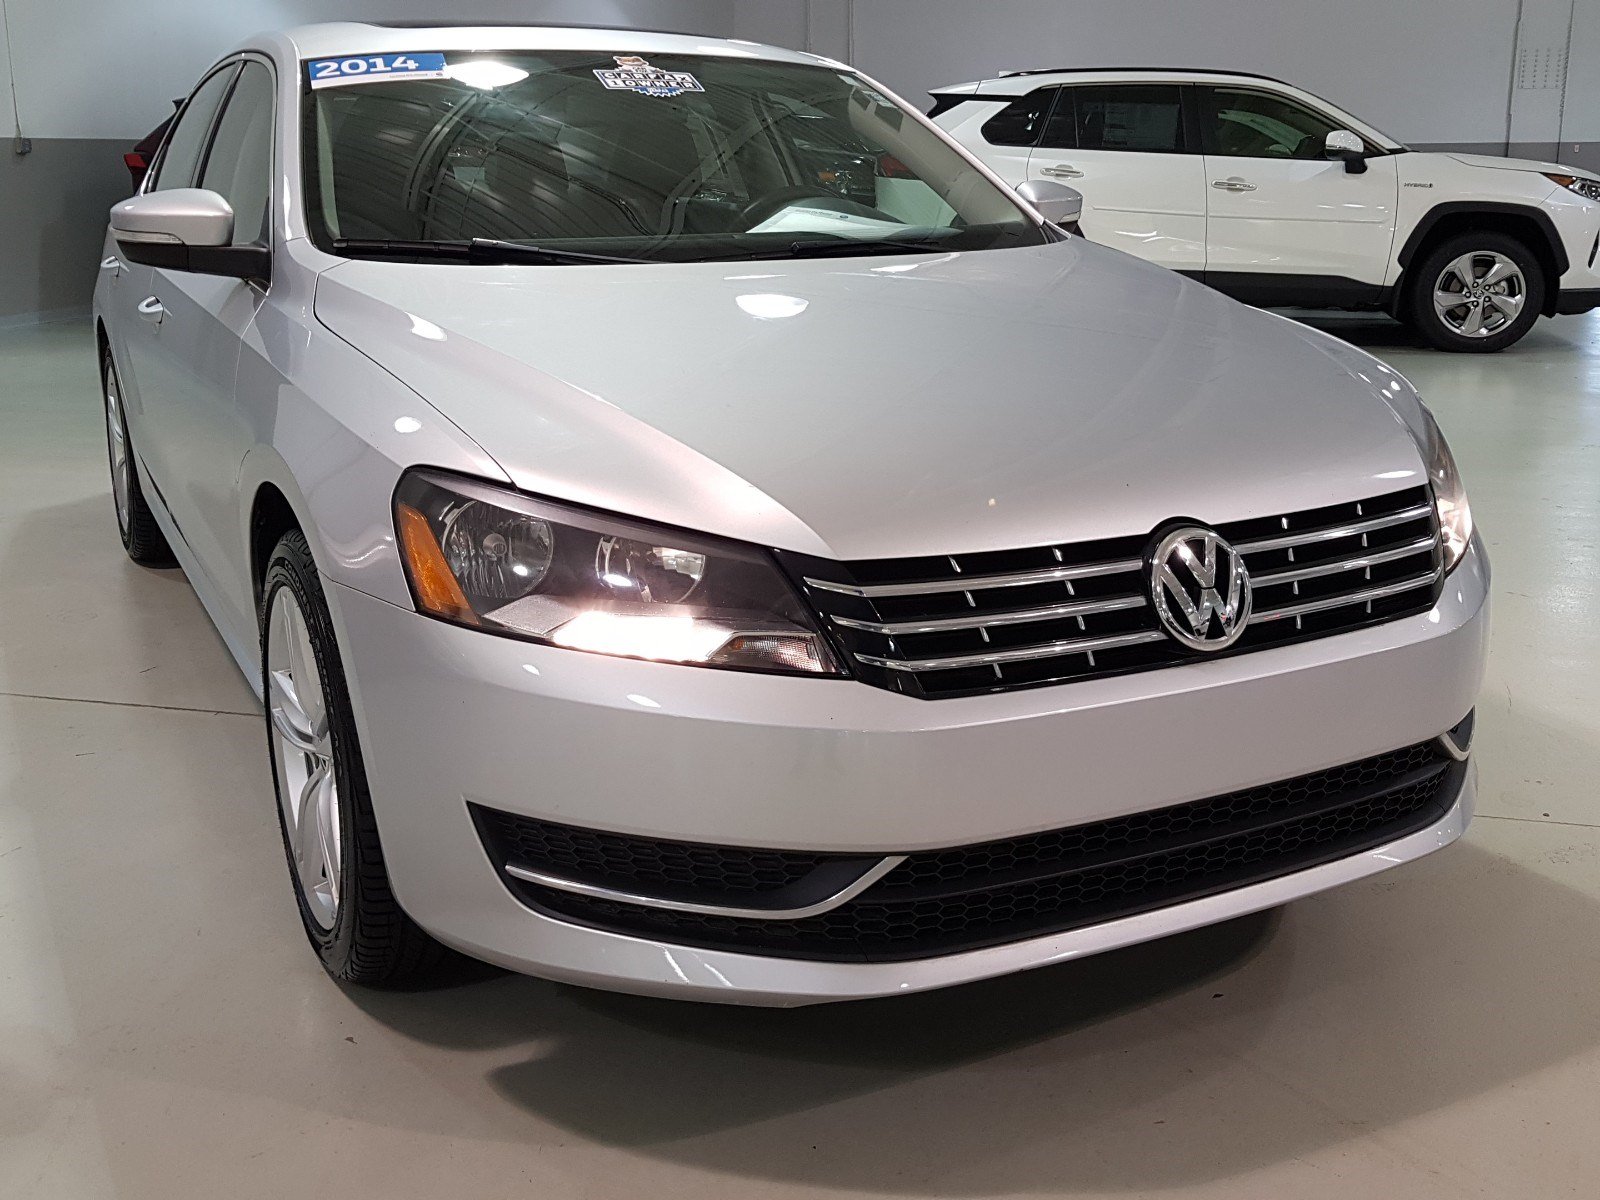 Certified PreOwned 2014 Volkswagen Passat TDI SE w